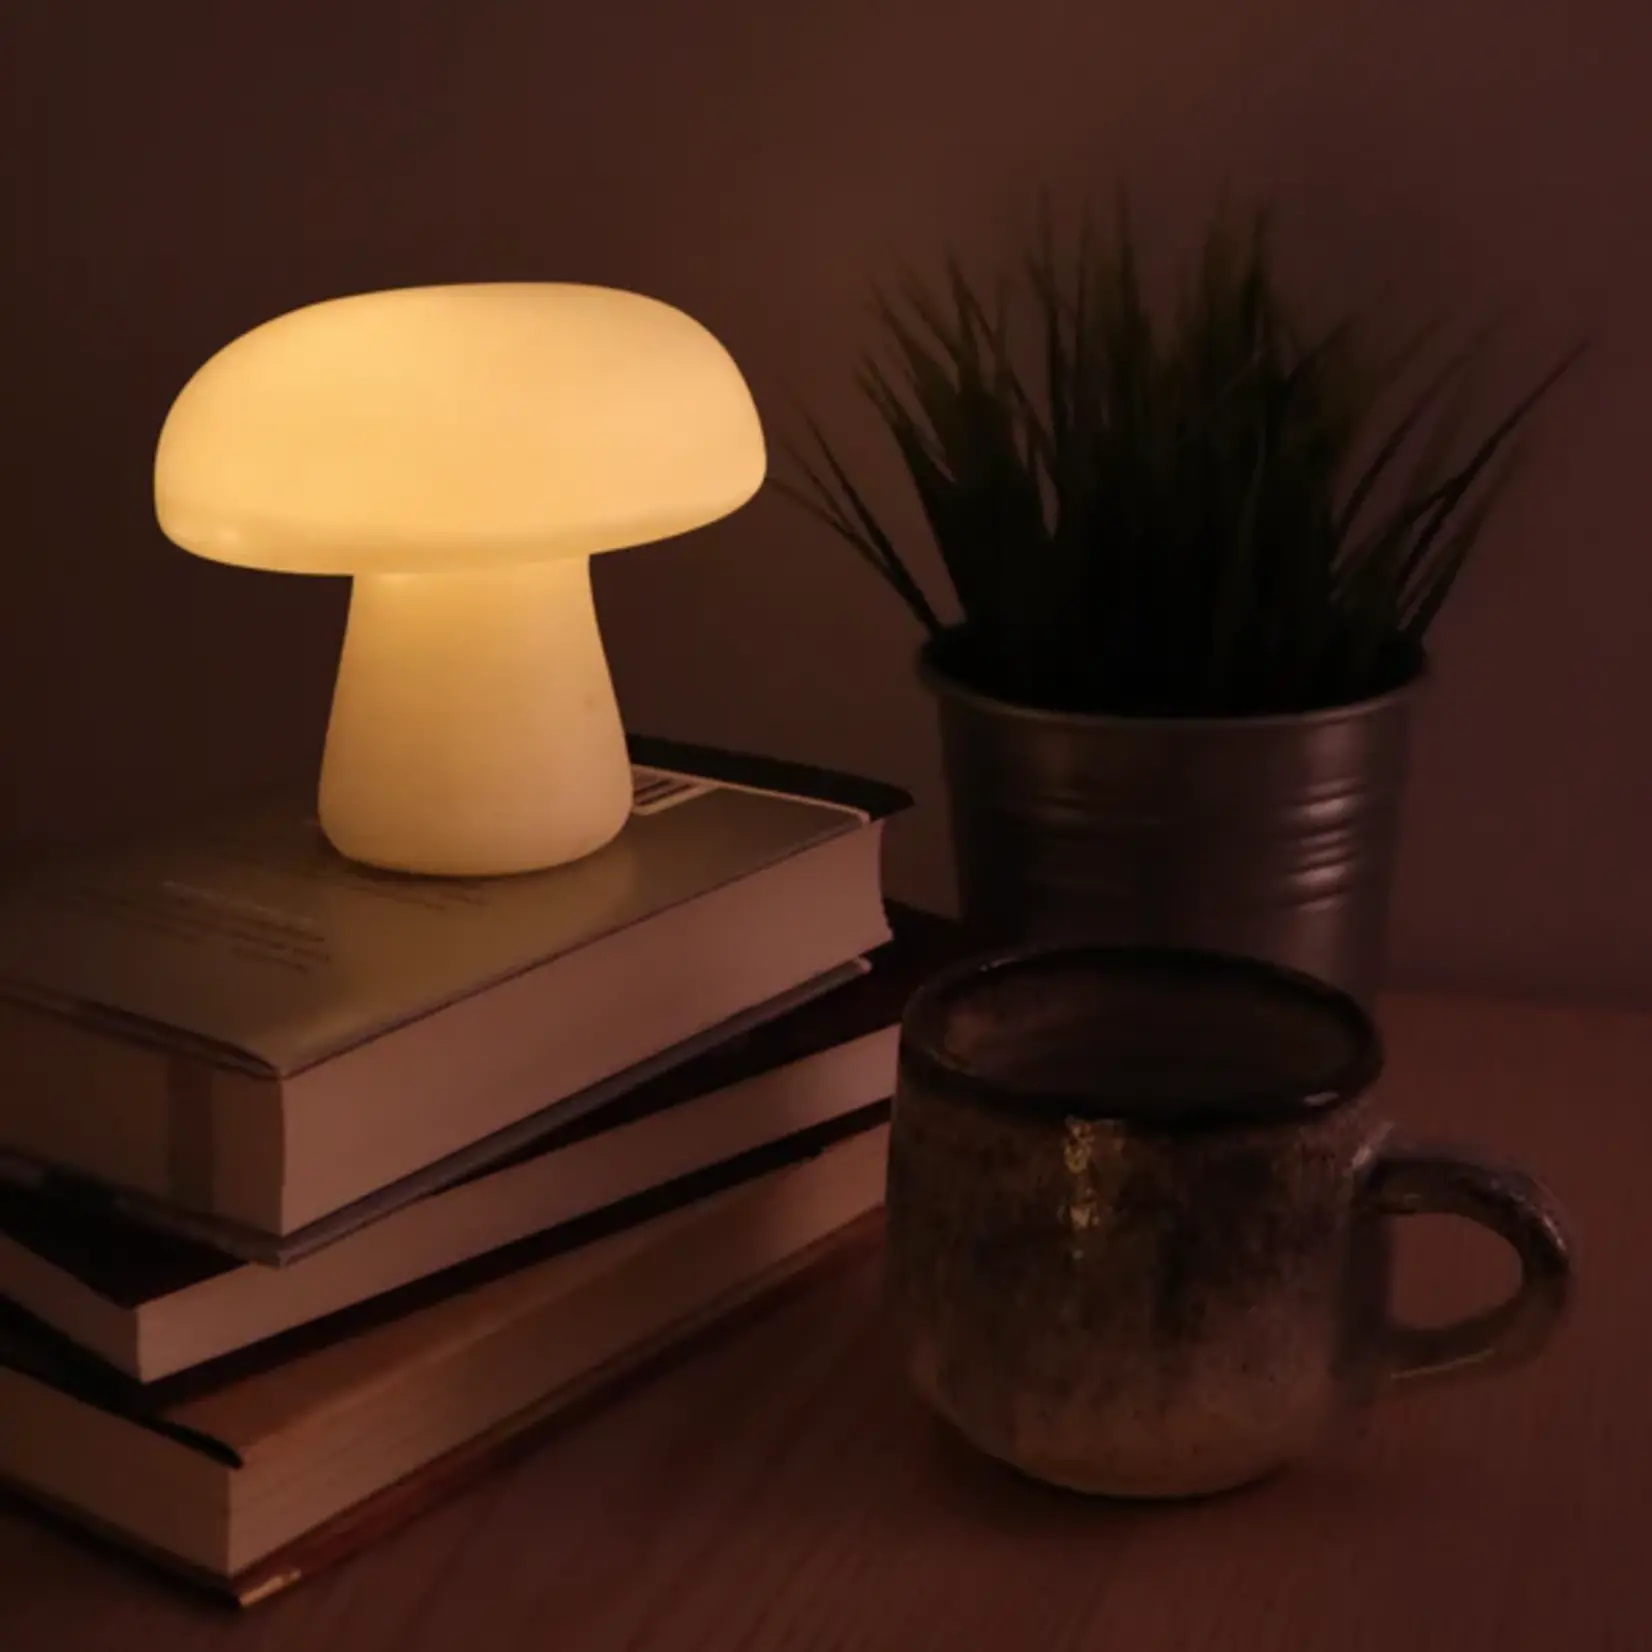 Kikkerkand Porcelain Mushroom Light